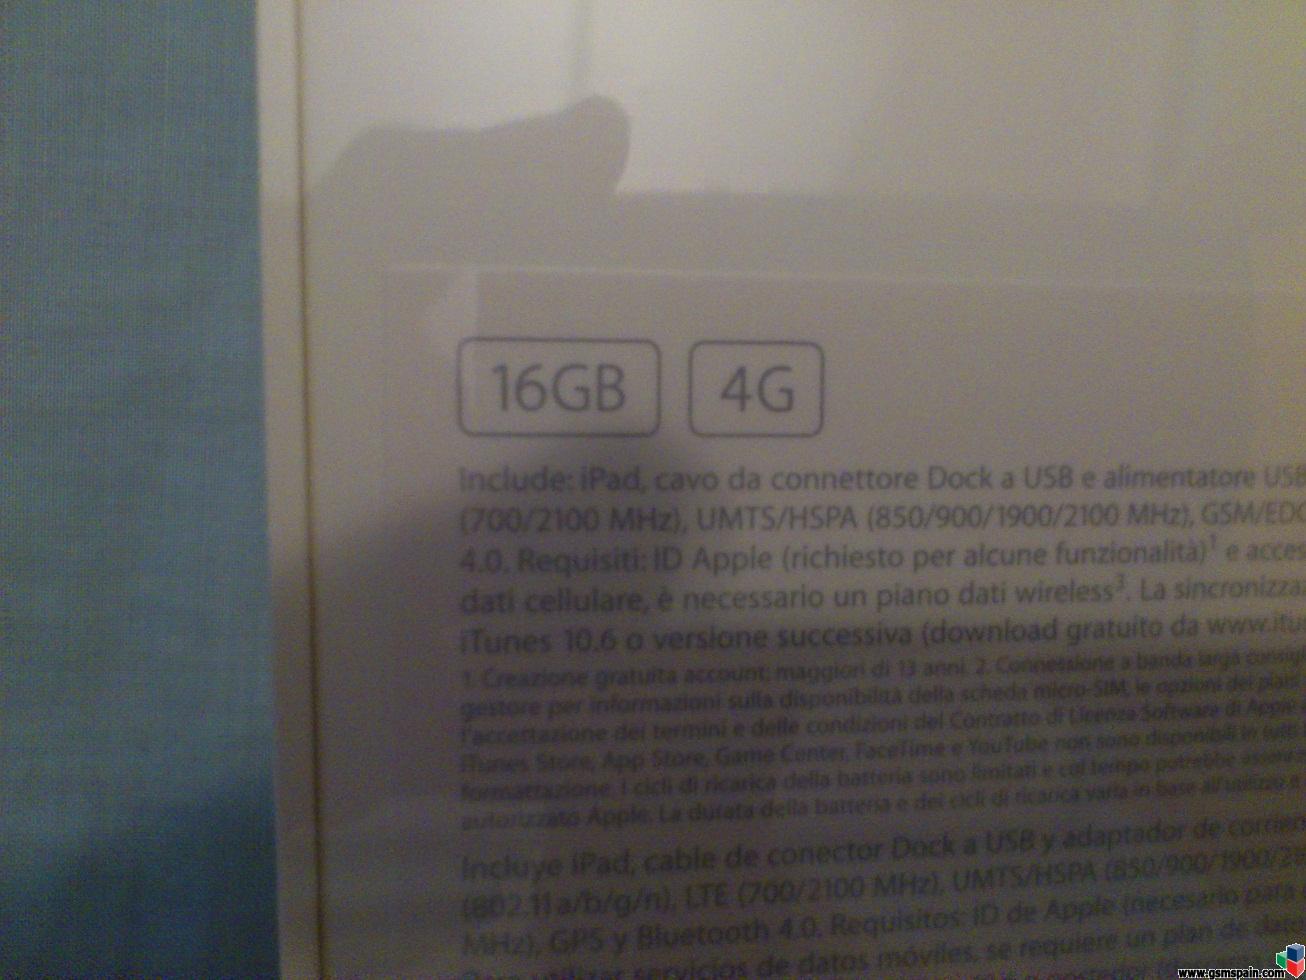 [VENDO] Nuevo iPad 3 Wifi+Cellular 4G 16Gb NEGRO Nuevo a estrenar. Factura.